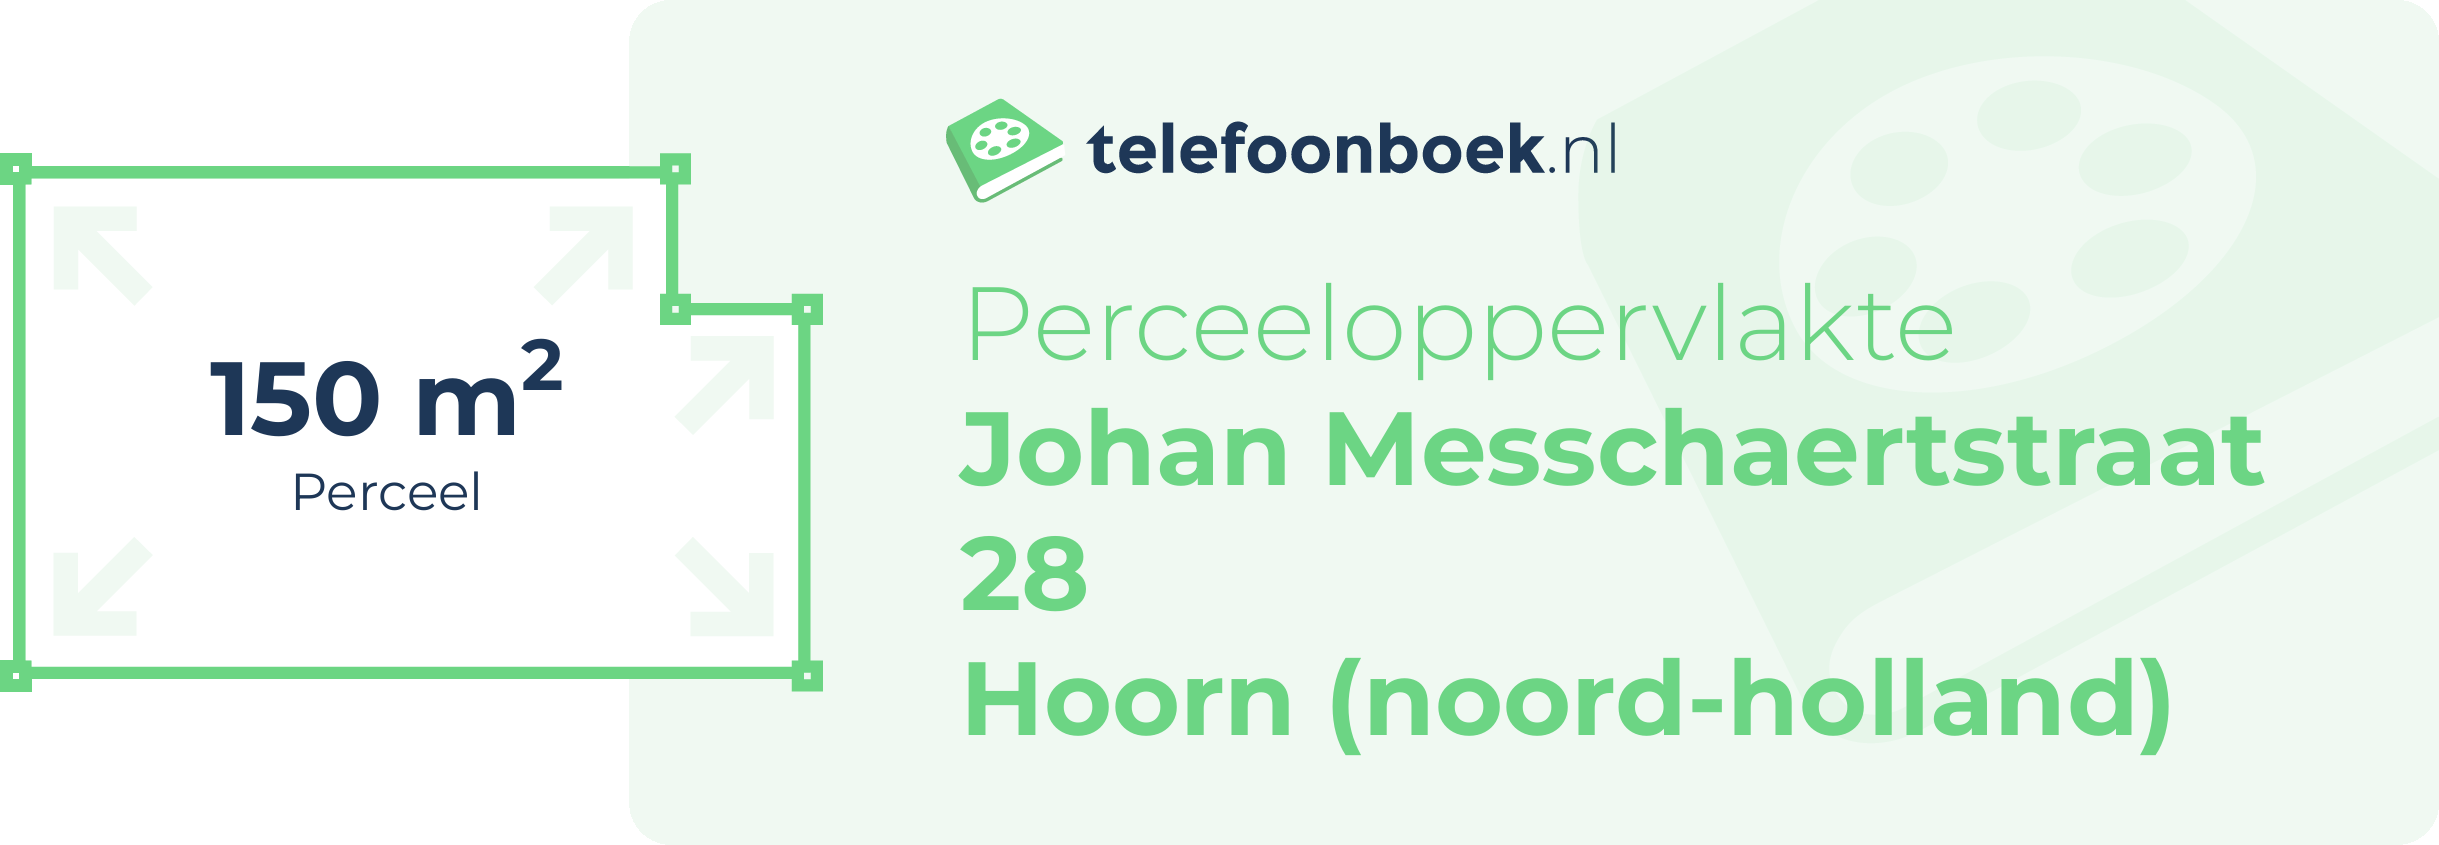 Perceeloppervlakte Johan Messchaertstraat 28 Hoorn (Noord-Holland)